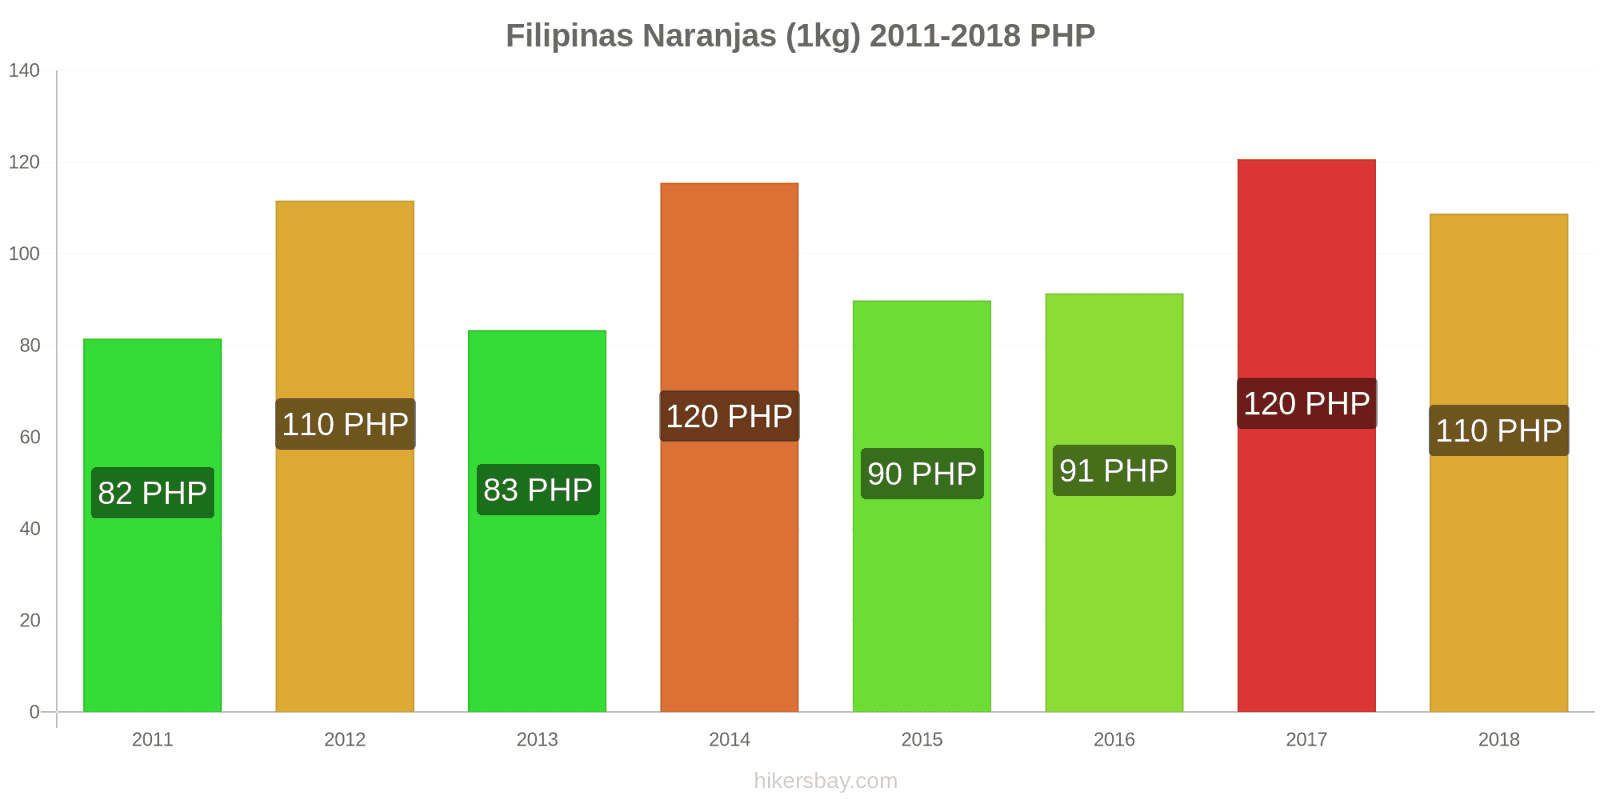 Filipinas cambios de precios Naranjas (1kg) hikersbay.com